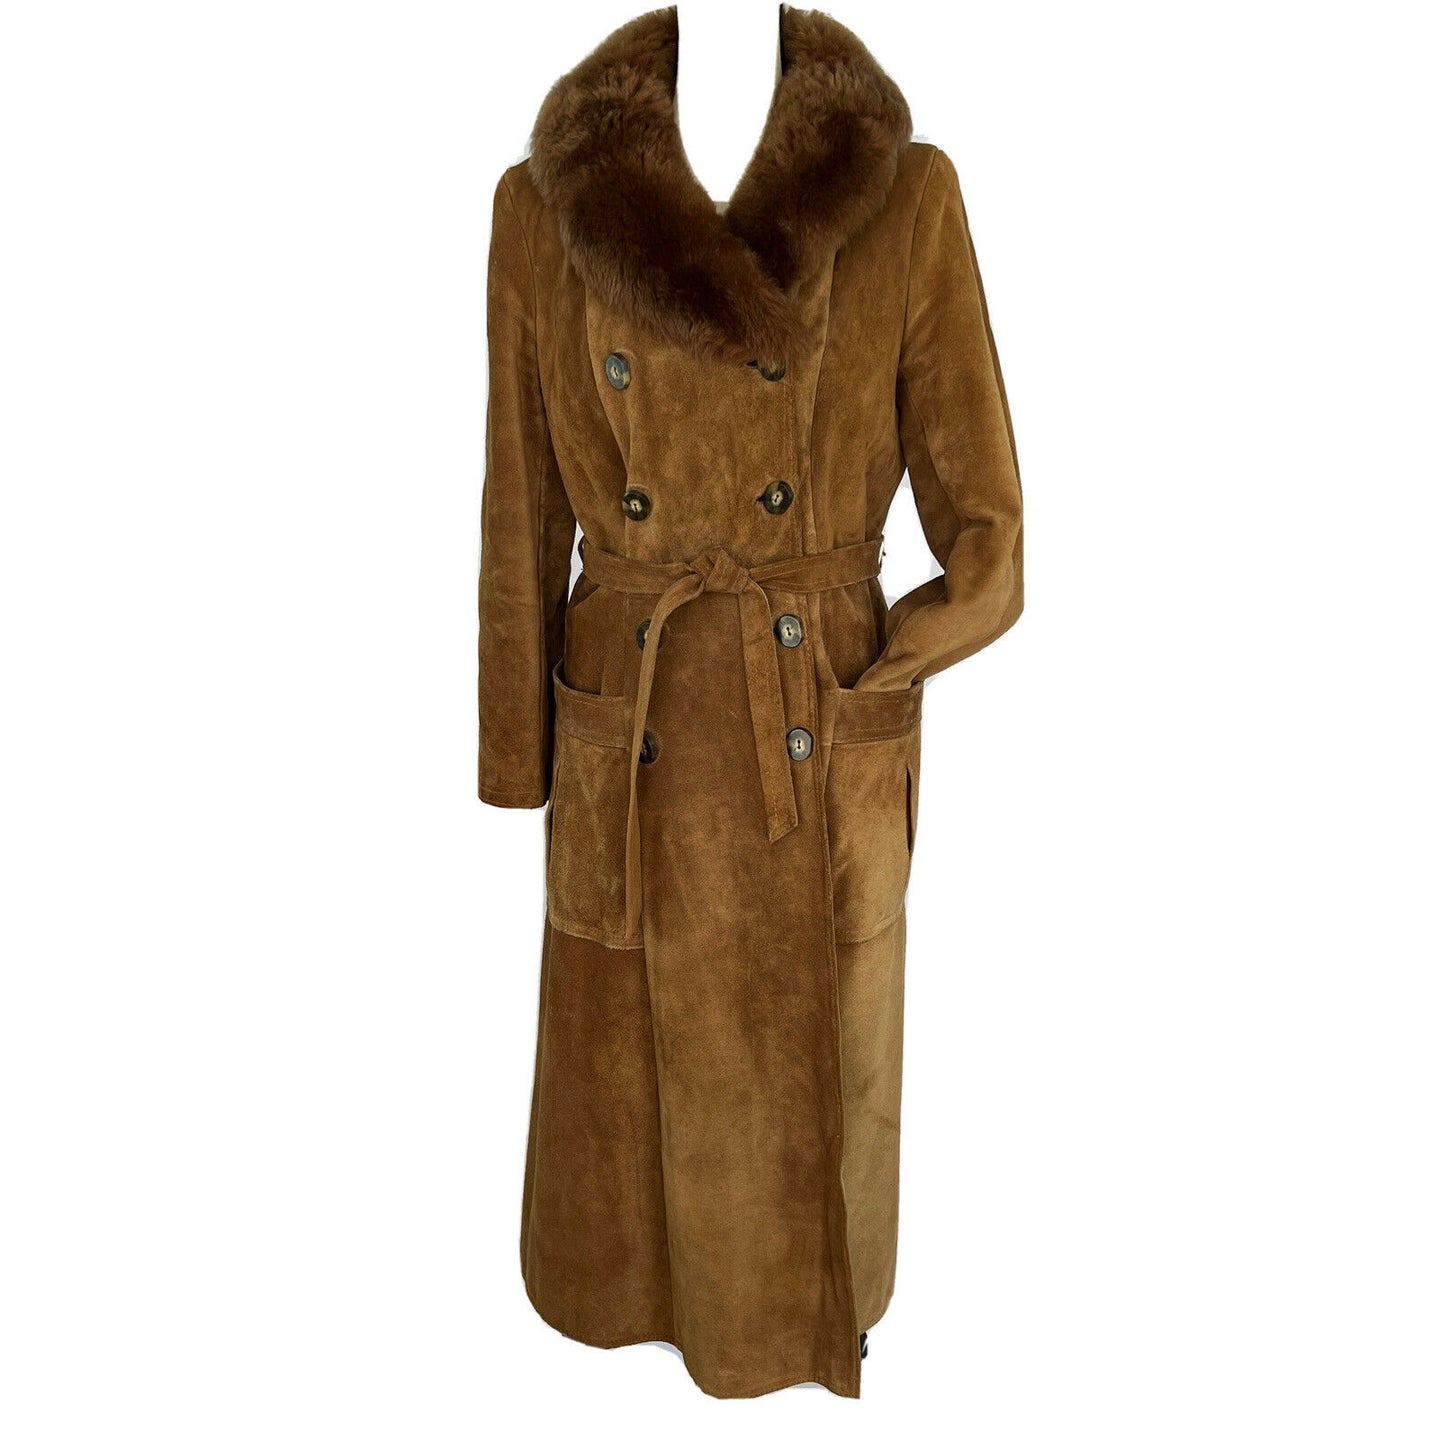 70s Long Brown Suede Women's Coat Size Medium